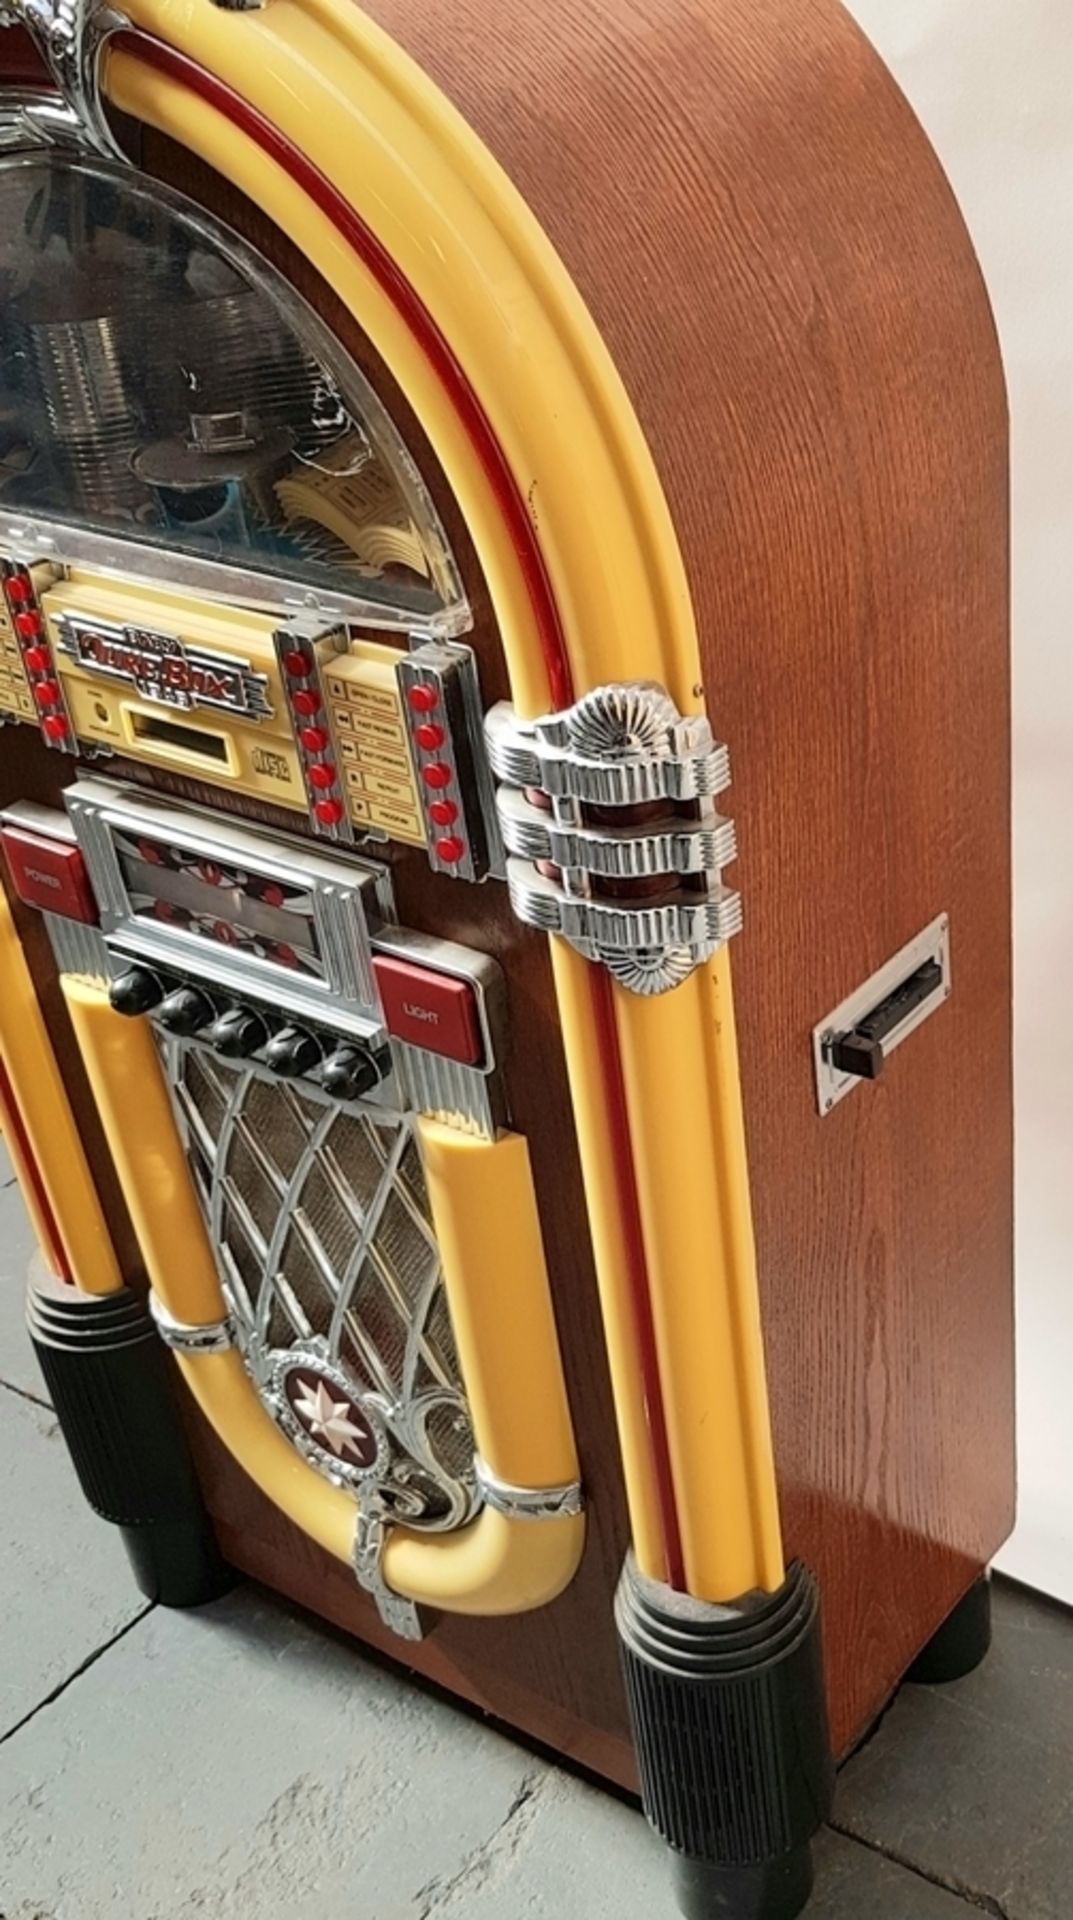 (Curiosa) Jukebox, Wurlitzer Baby Wurlitzer jukebox, replica naar het originele model uit 1946 - Bild 2 aus 5